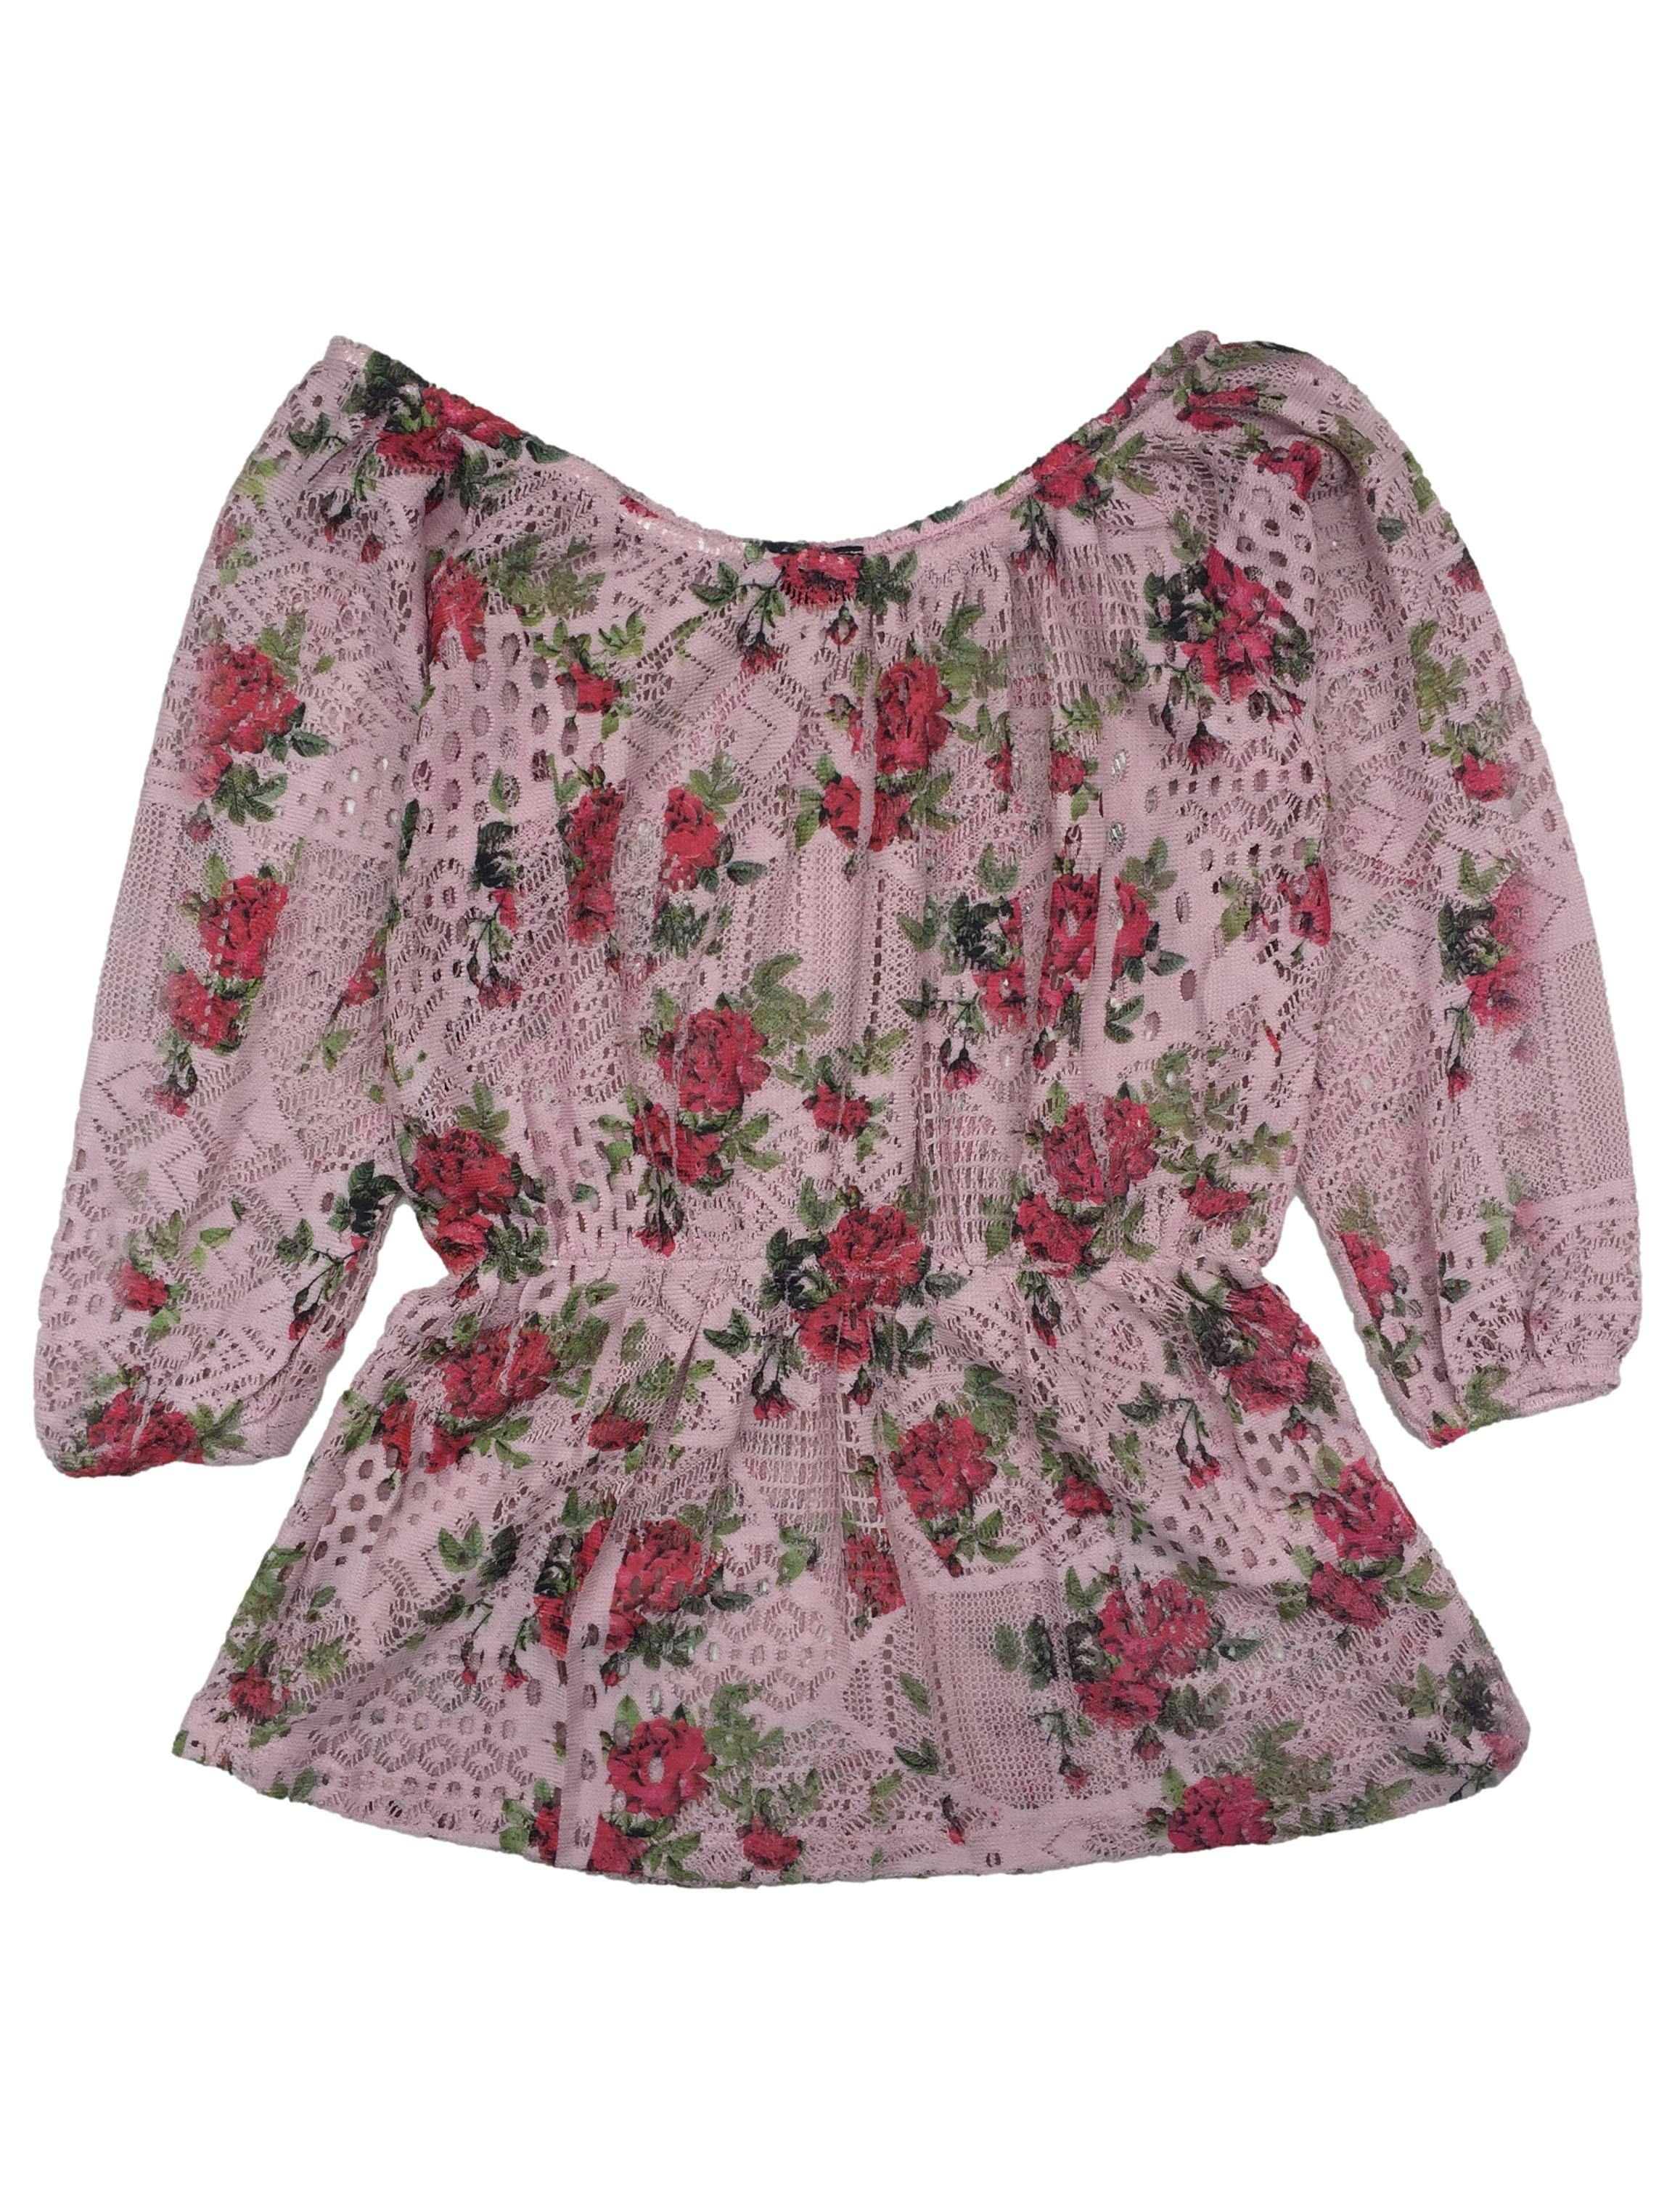 Chompita de tejido calado rosada con estampado floral, elástico en cintura. Busto 83 cm, Largo 24 cm.